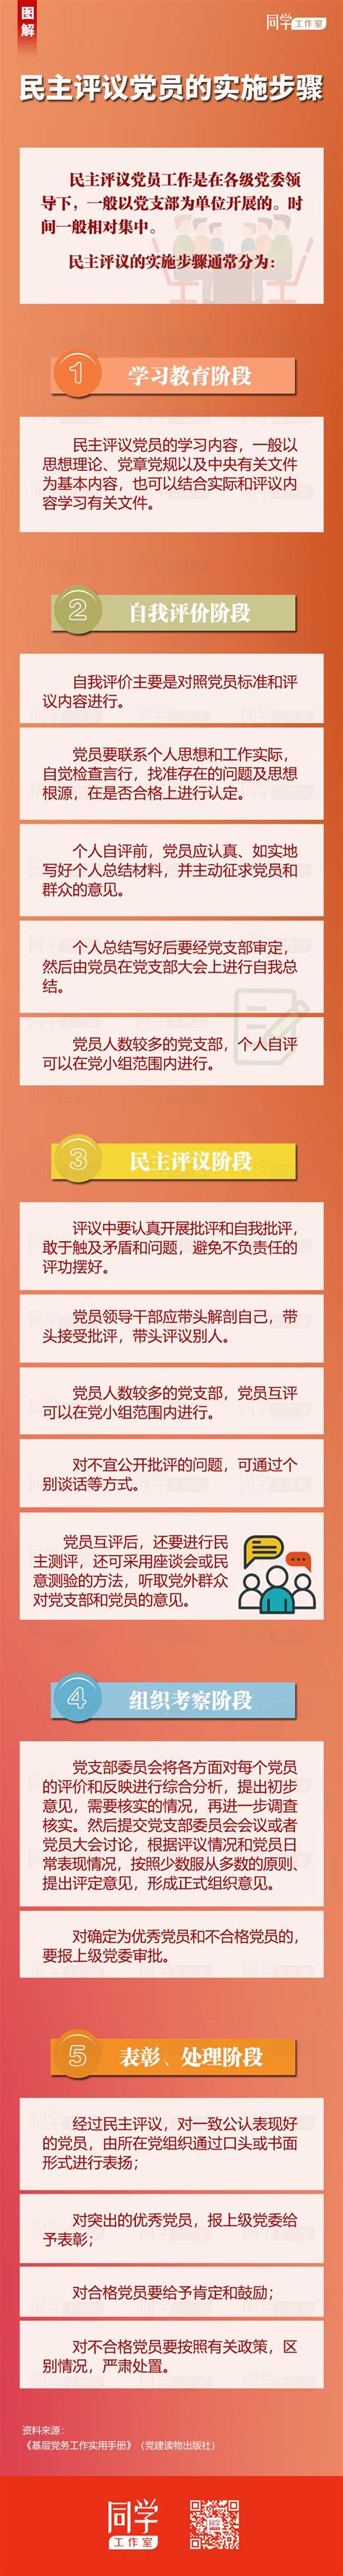 中国党员必须履行的八项义务简答 - 誉云网络